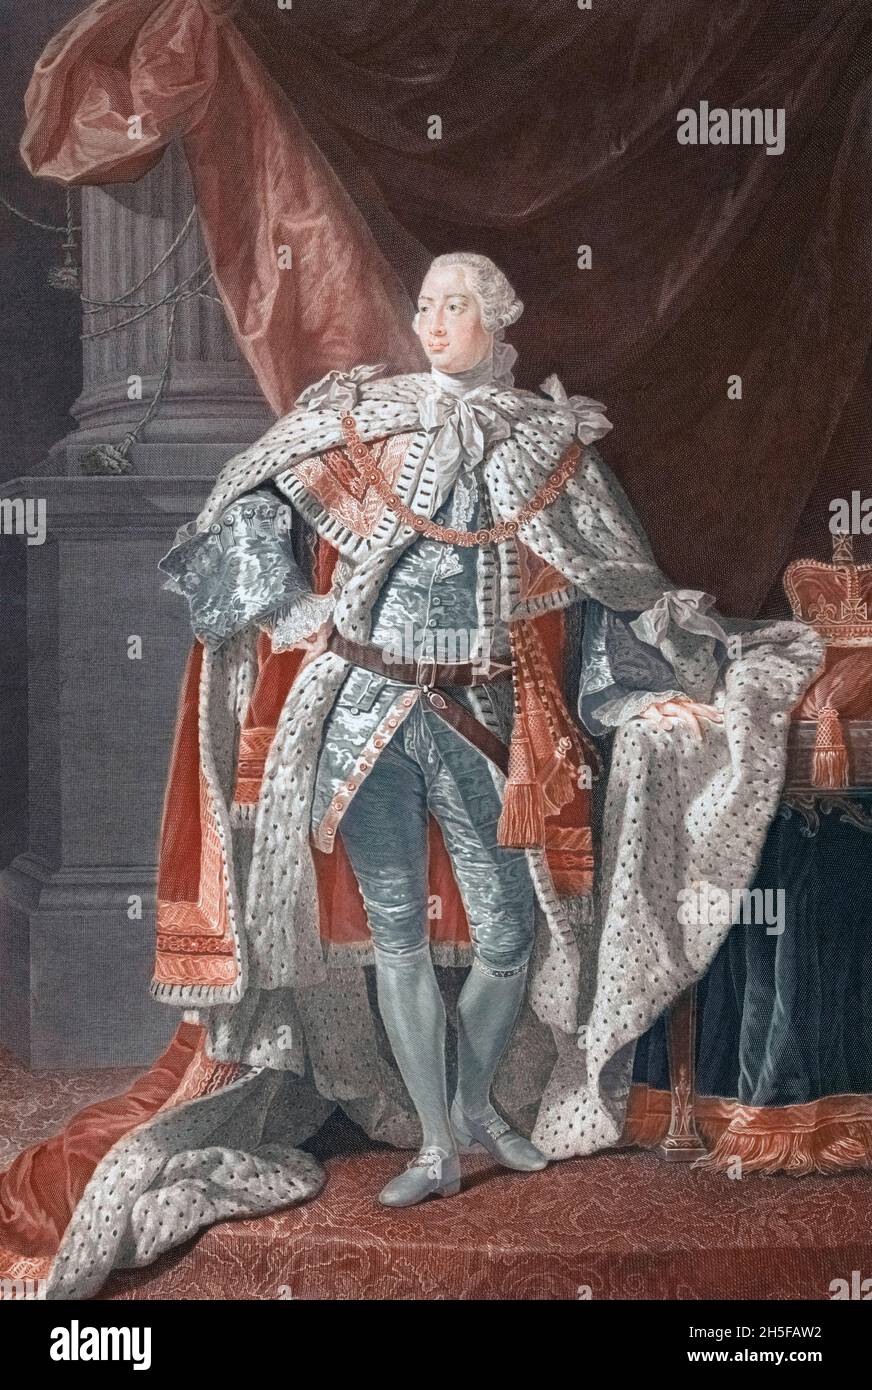 George III, 1738 - 1820. George William Frederick, König von Großbritannien und Irland und König von Hannover, 1815 - 1820. Nach einem Druck von William Wynne Ryland aus dem Gemälde von Allan Ramsay um 1762. Stockfoto